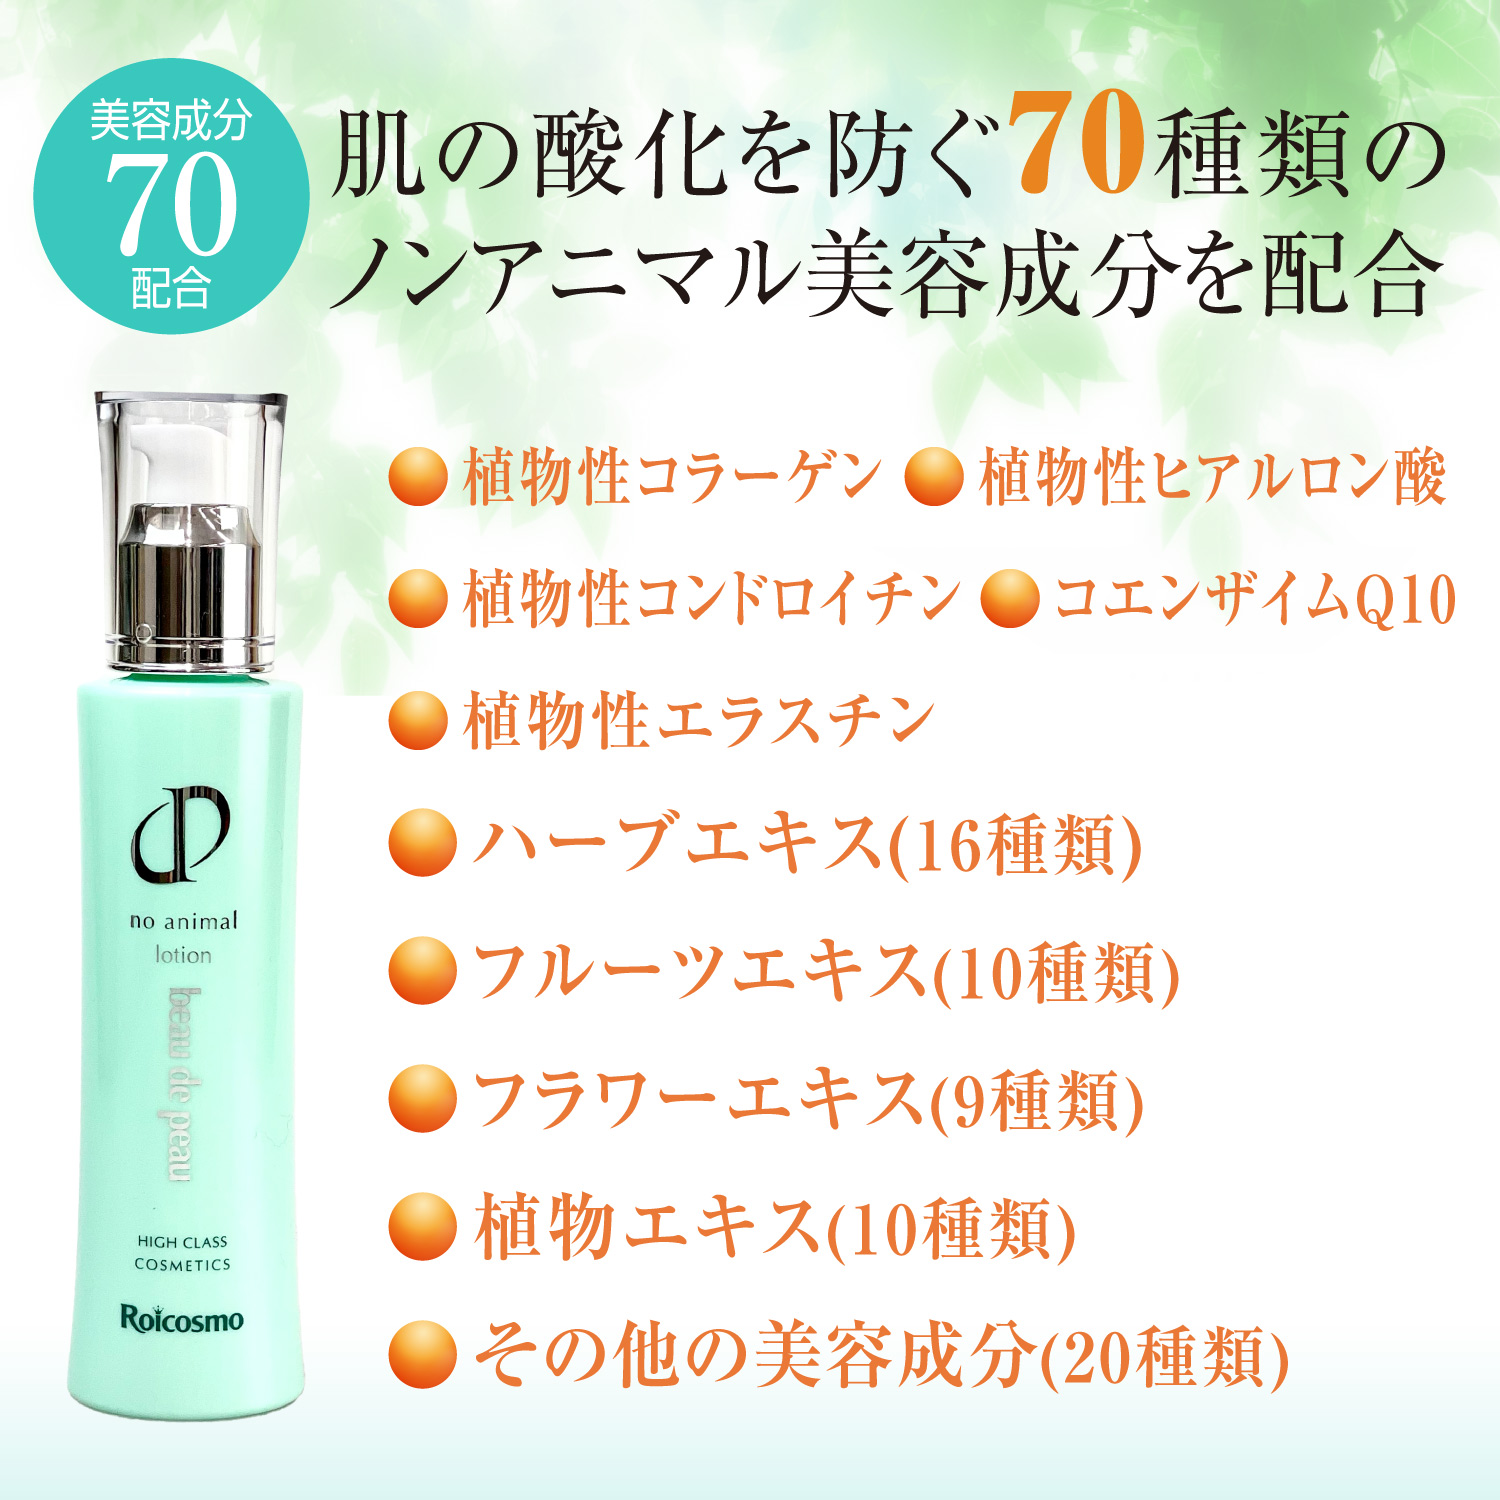 ノンアニマル美容成分を70種類配合の化粧水